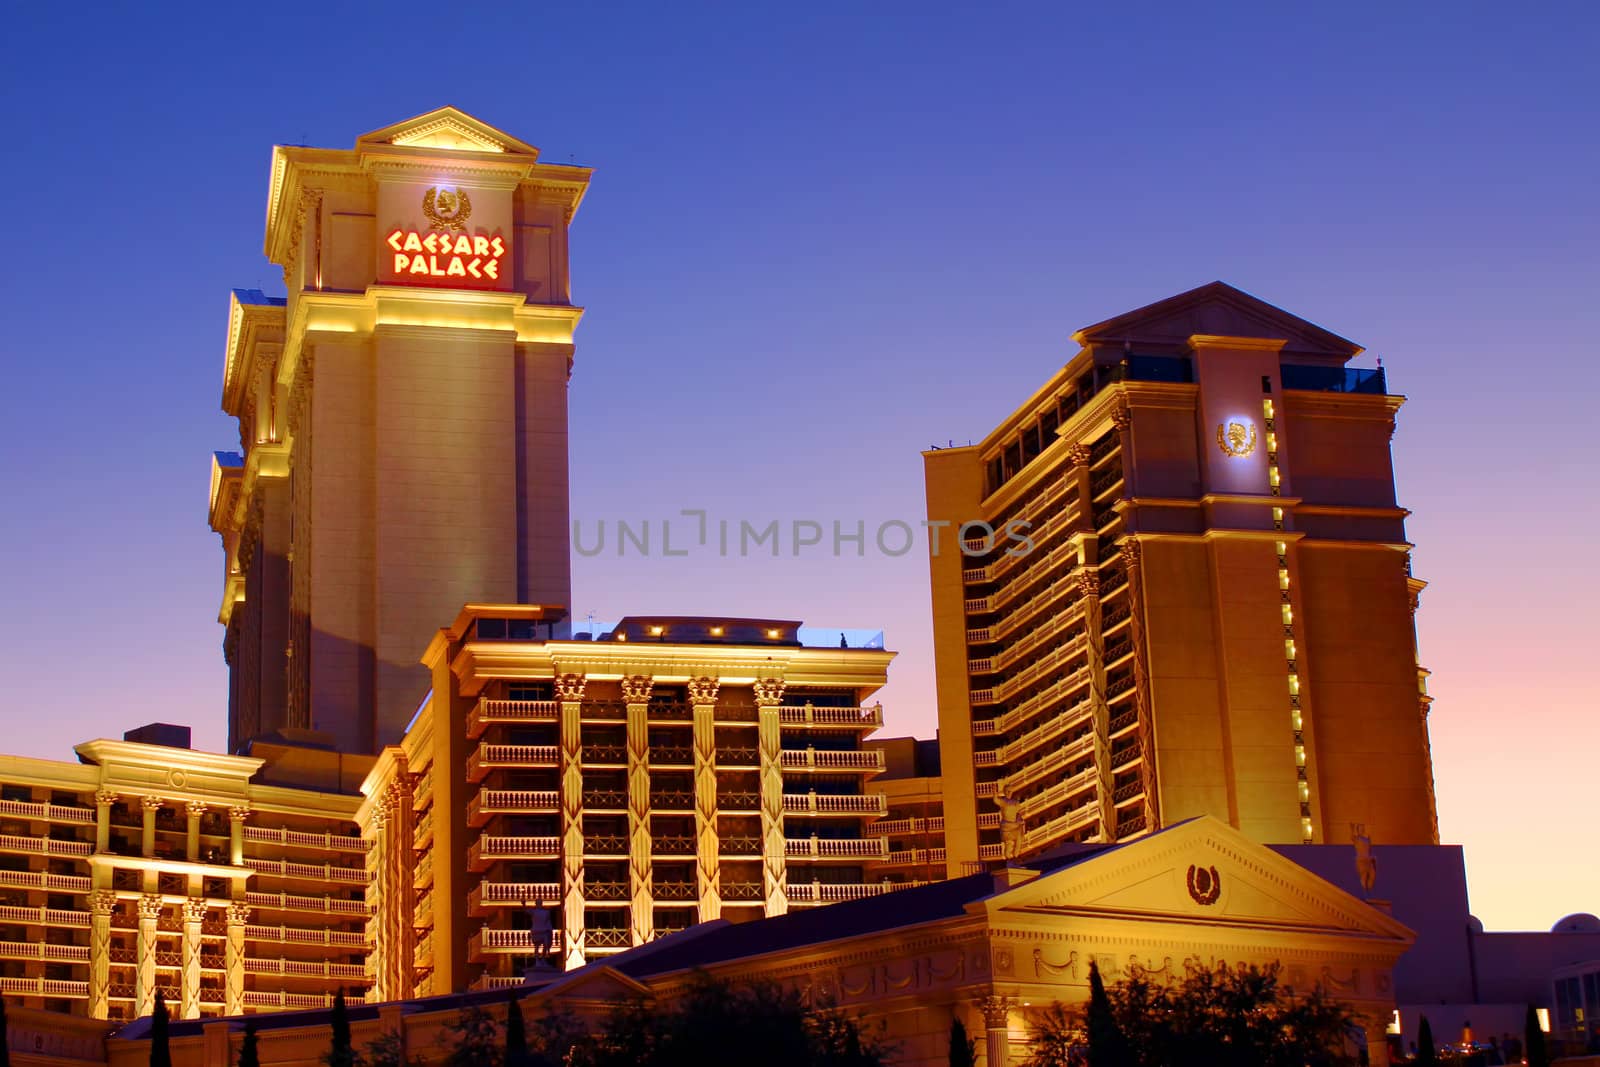 Caesars Palace of Las Vegas by Wirepec